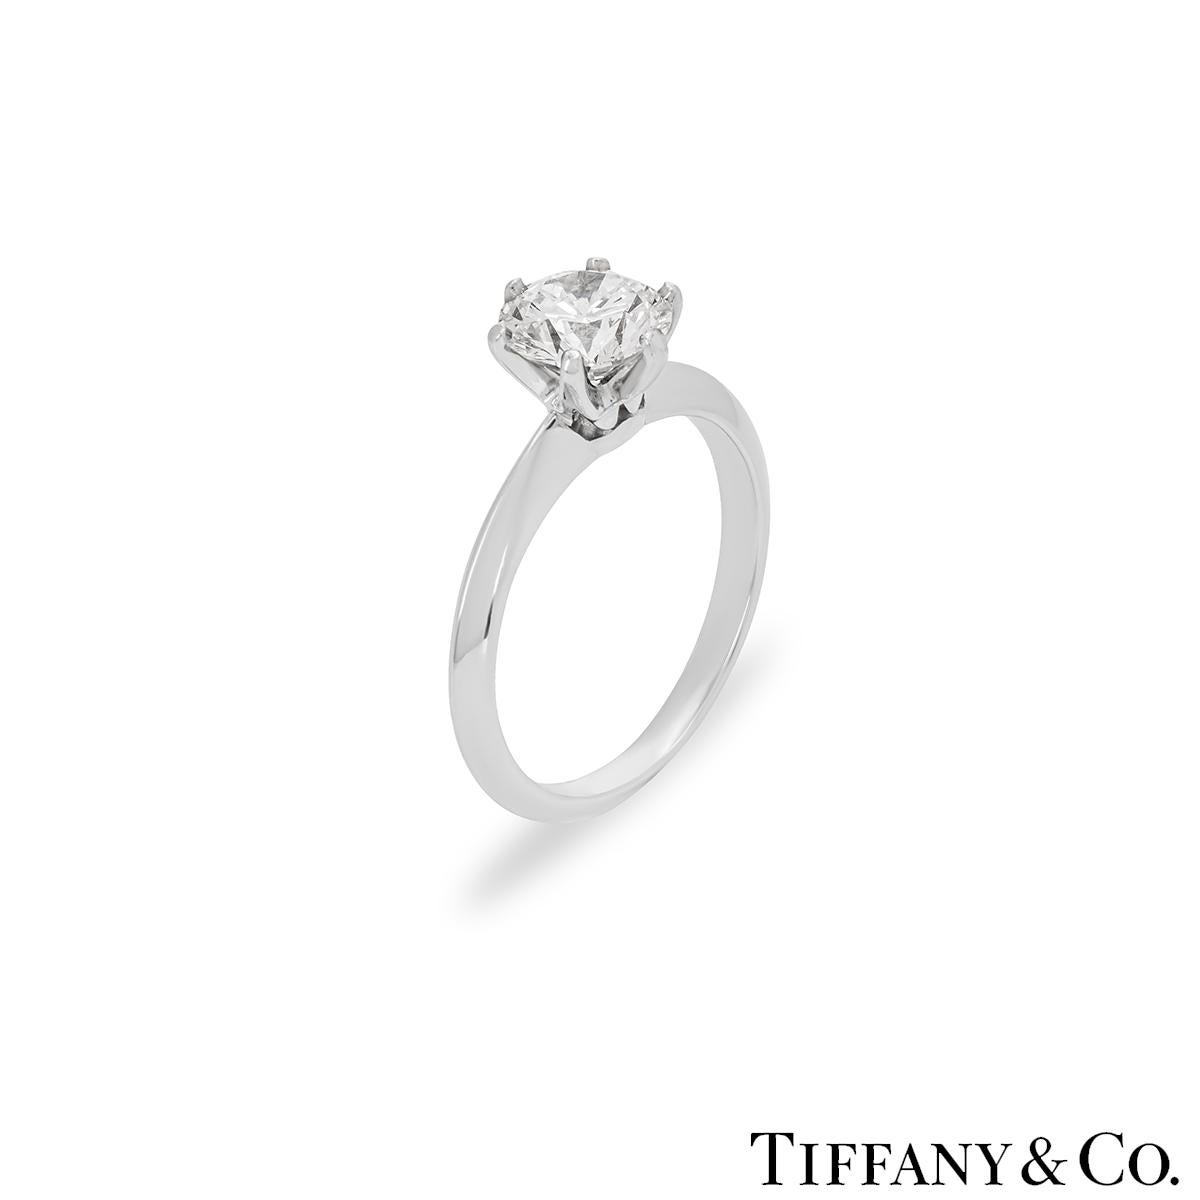 Une bague solitaire en diamant platine éblouissante de Tiffany & Co. de la collection Setting. Le solitaire présente un diamant rond de taille brillant serti au centre dans une monture à 6 griffes, pesant 1,09ct, de couleur D et de pureté IF.